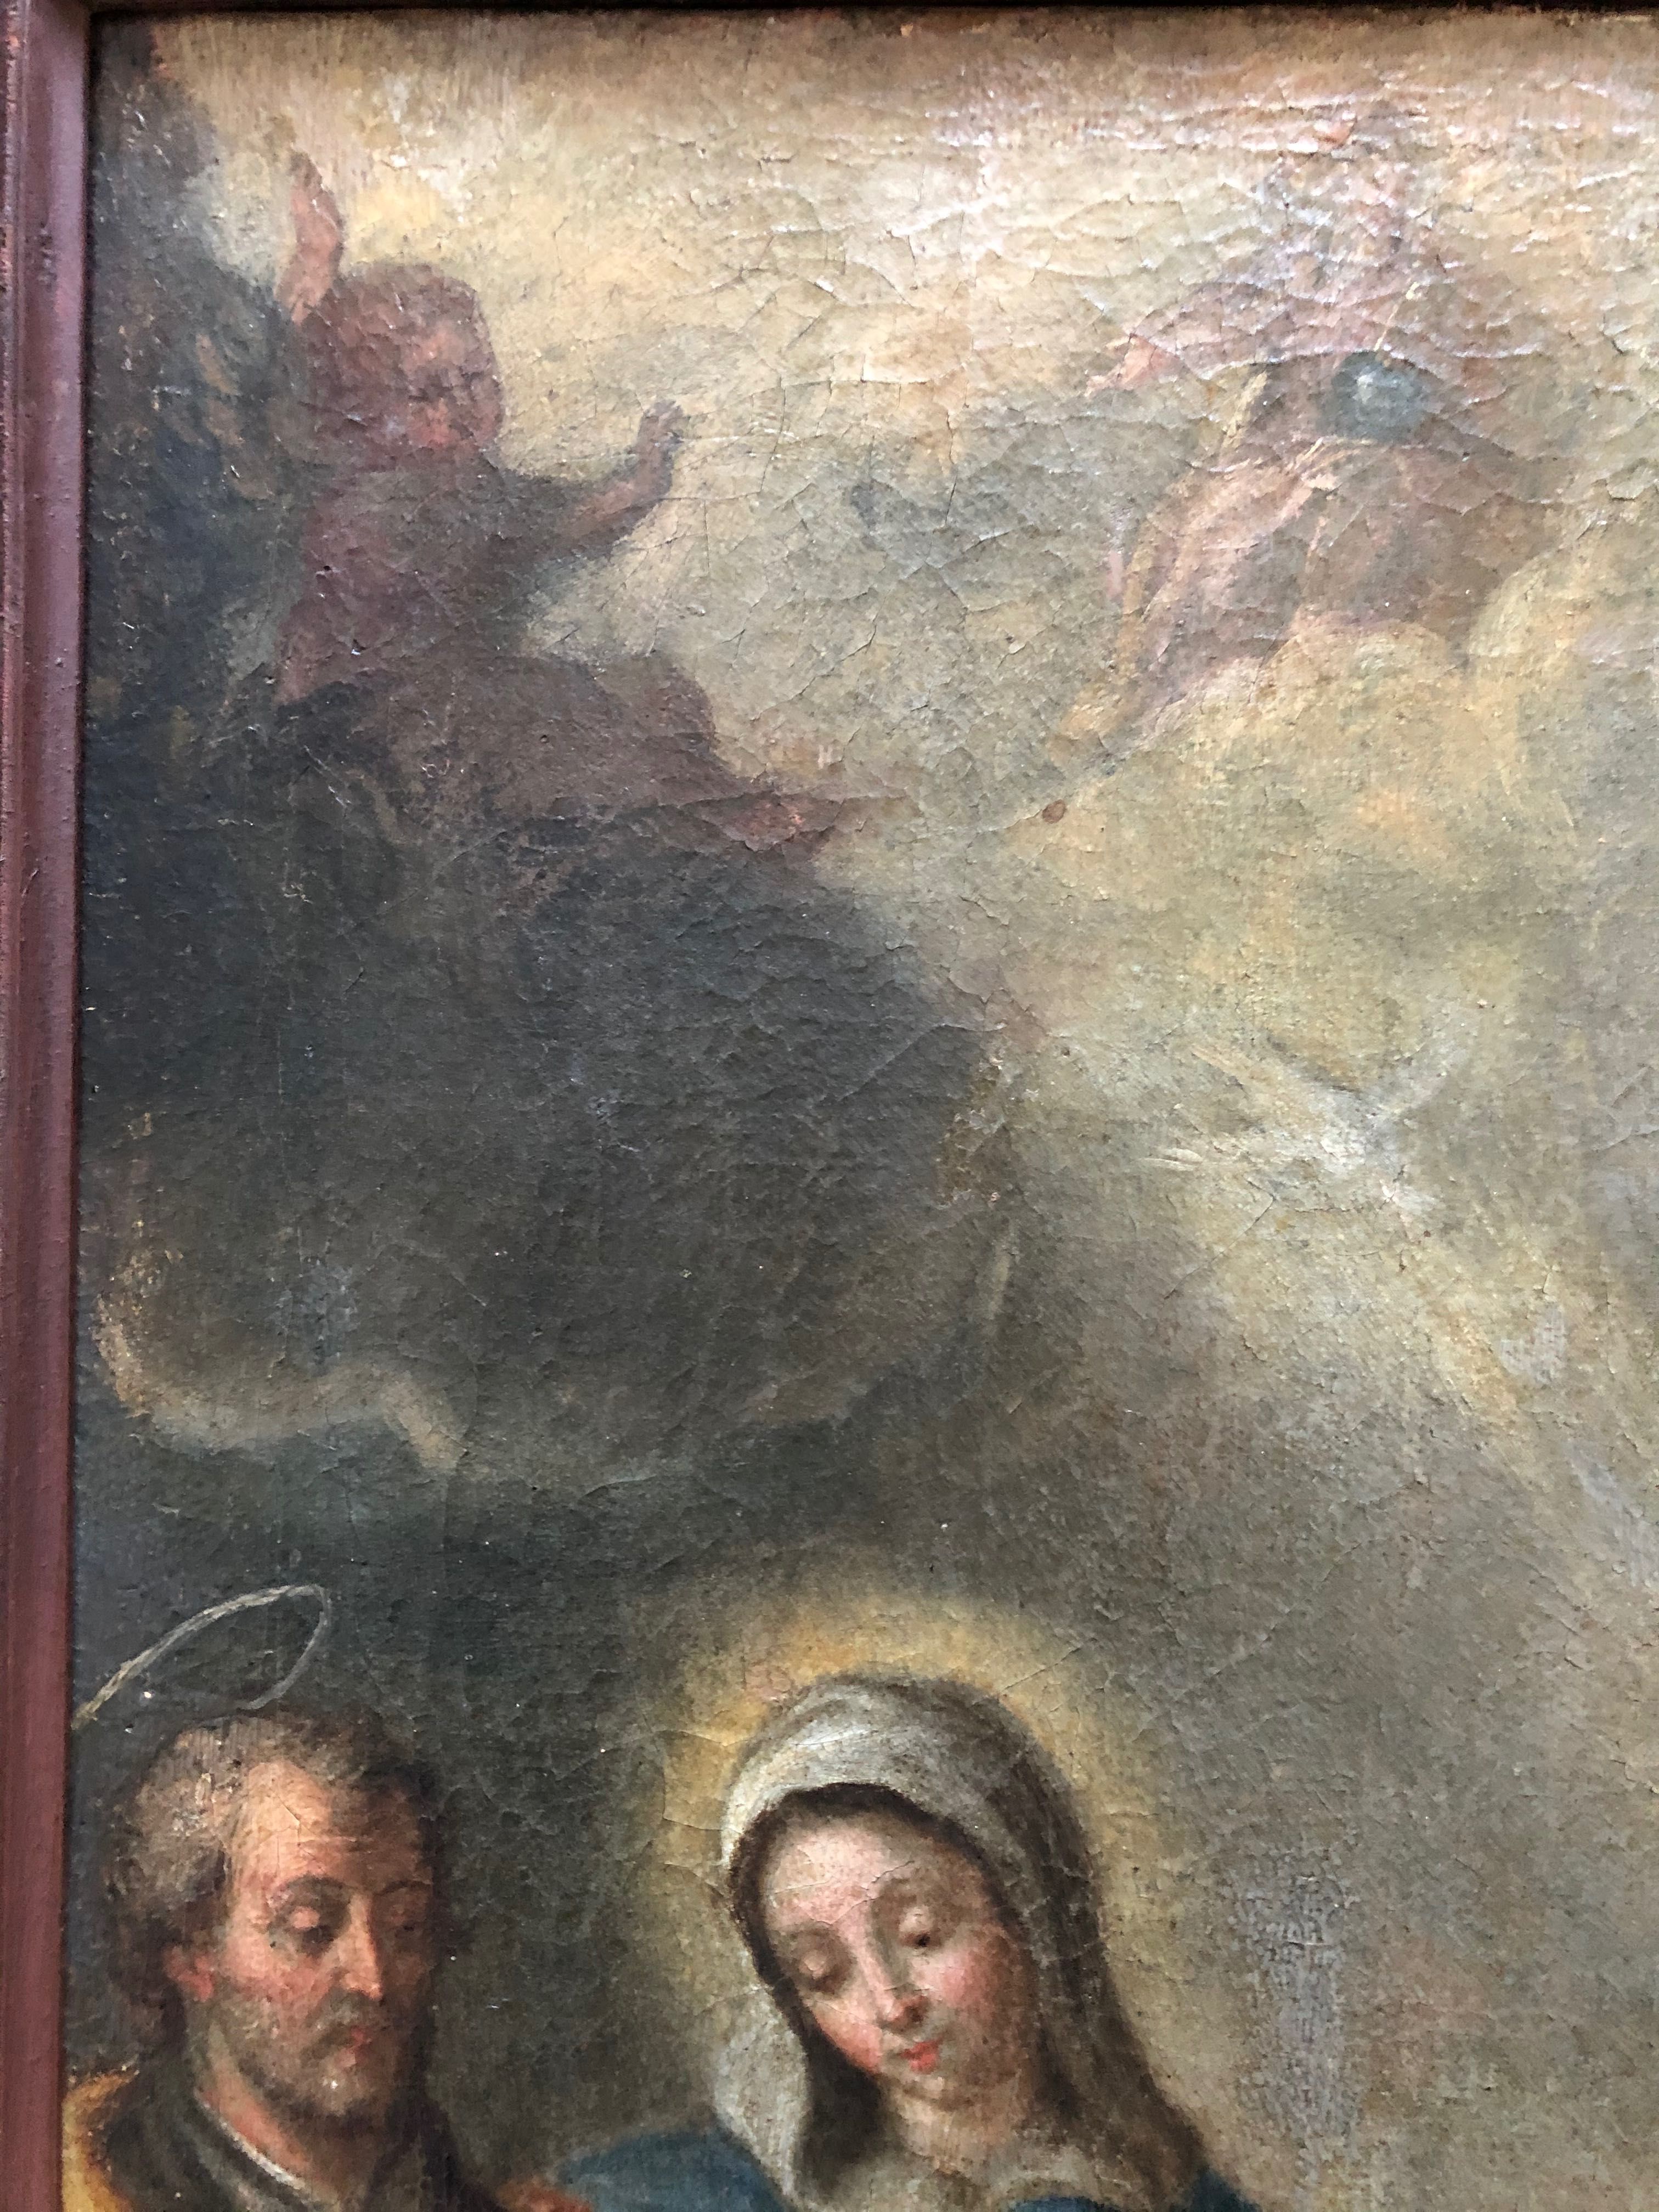 Obraz Świętej Teresy  z Avili